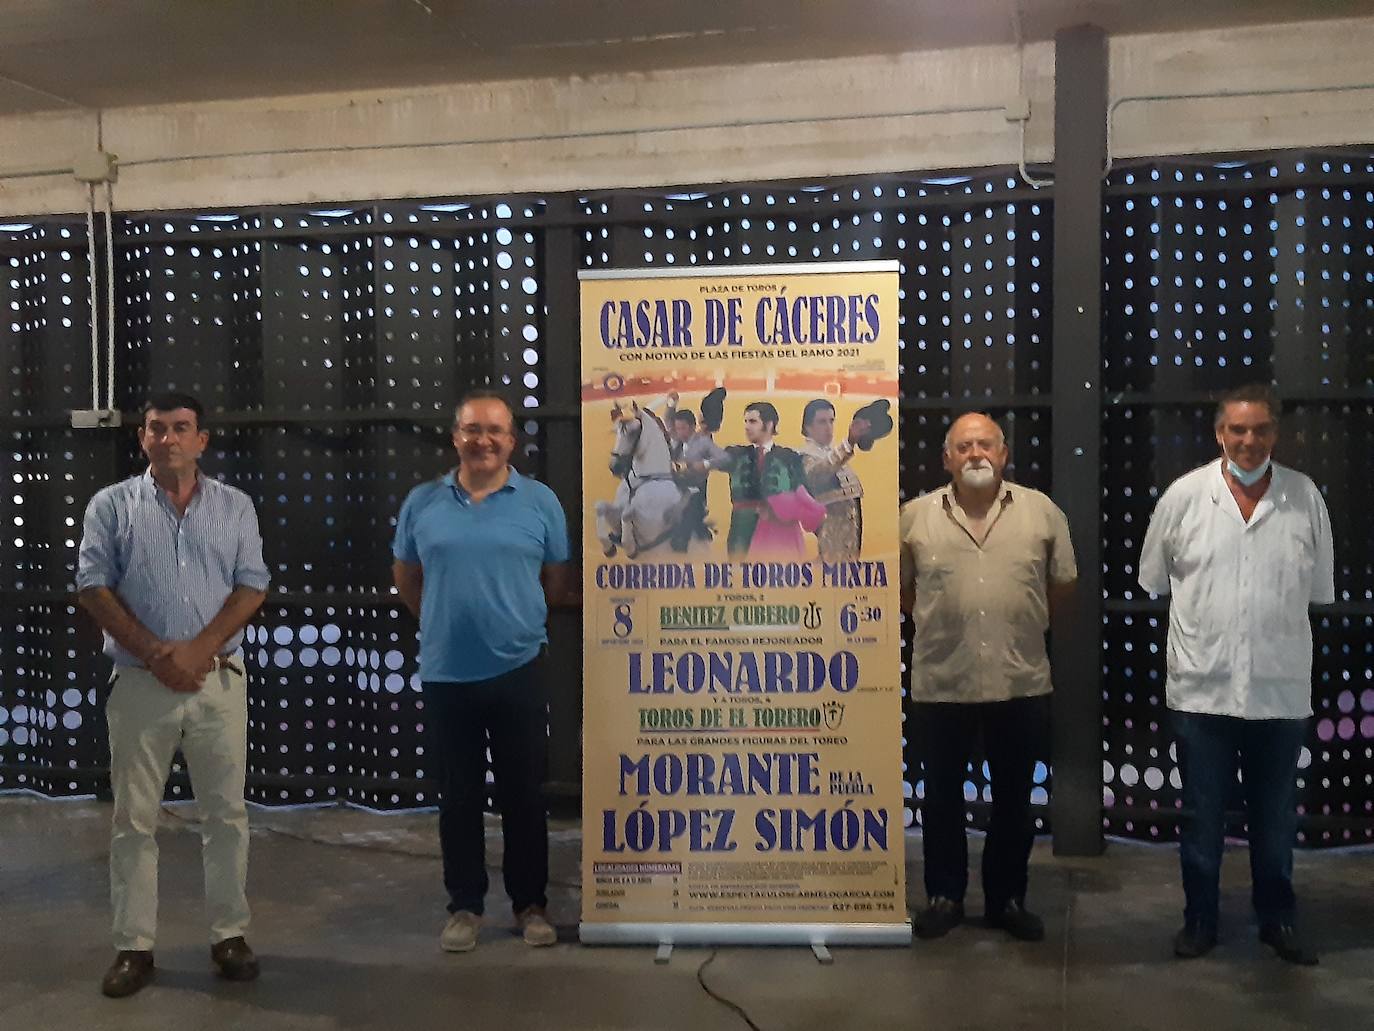 Casar de Cáceres presenta la corrida mixta de sus fiestas del Ramo: Leonardo, Morante de la Puebla y López Simón